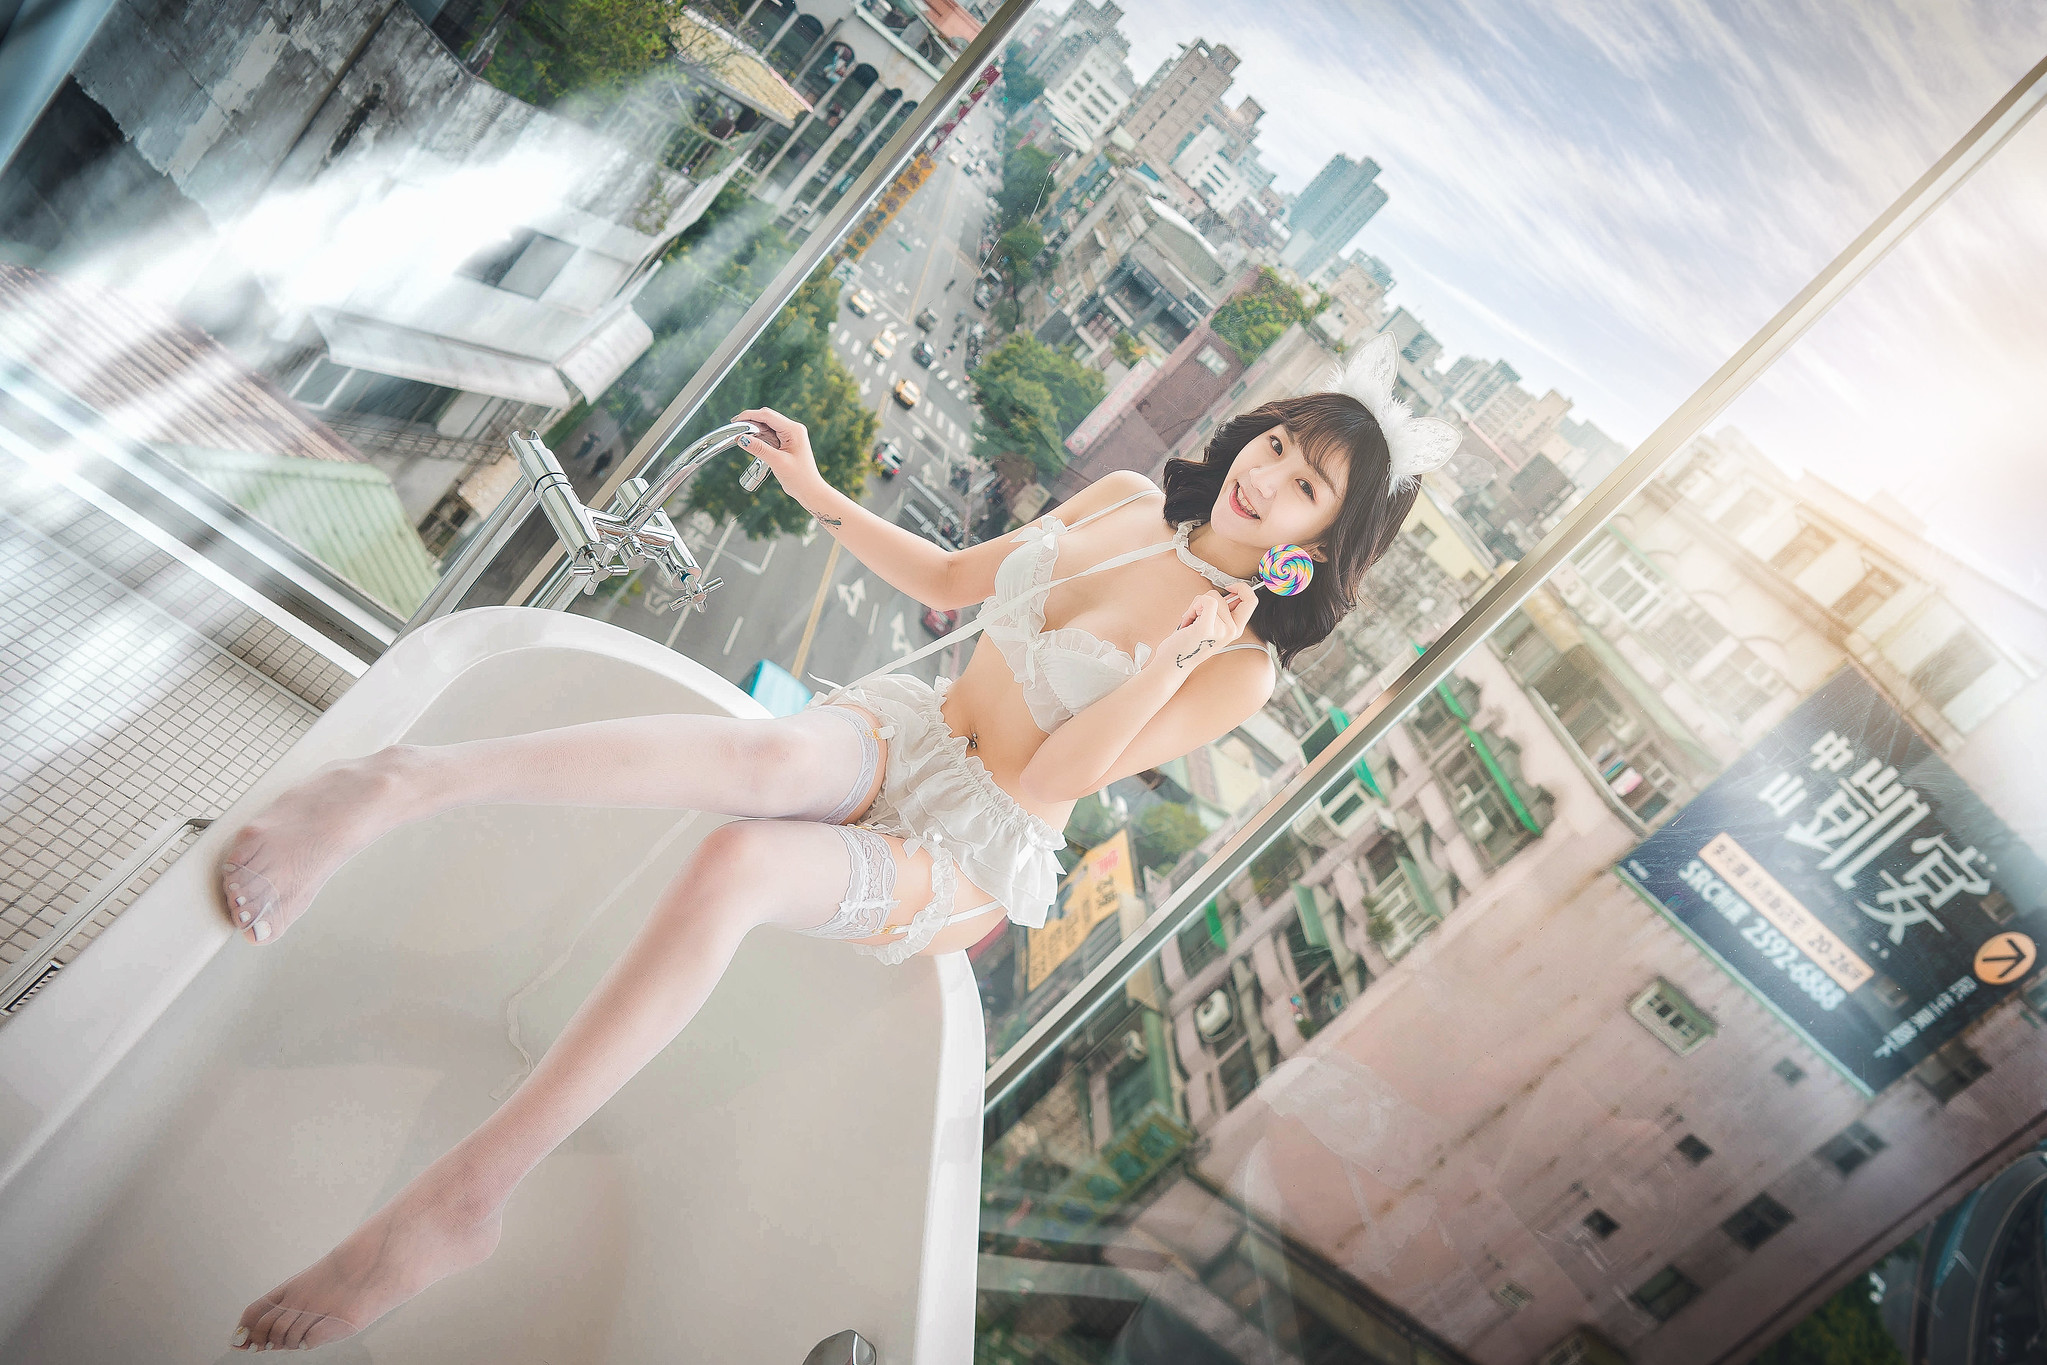 People 2047x1365 Asian women white lingerie lingerie women indoors model cityscape window bathtub Ruan Jingyi lollipop